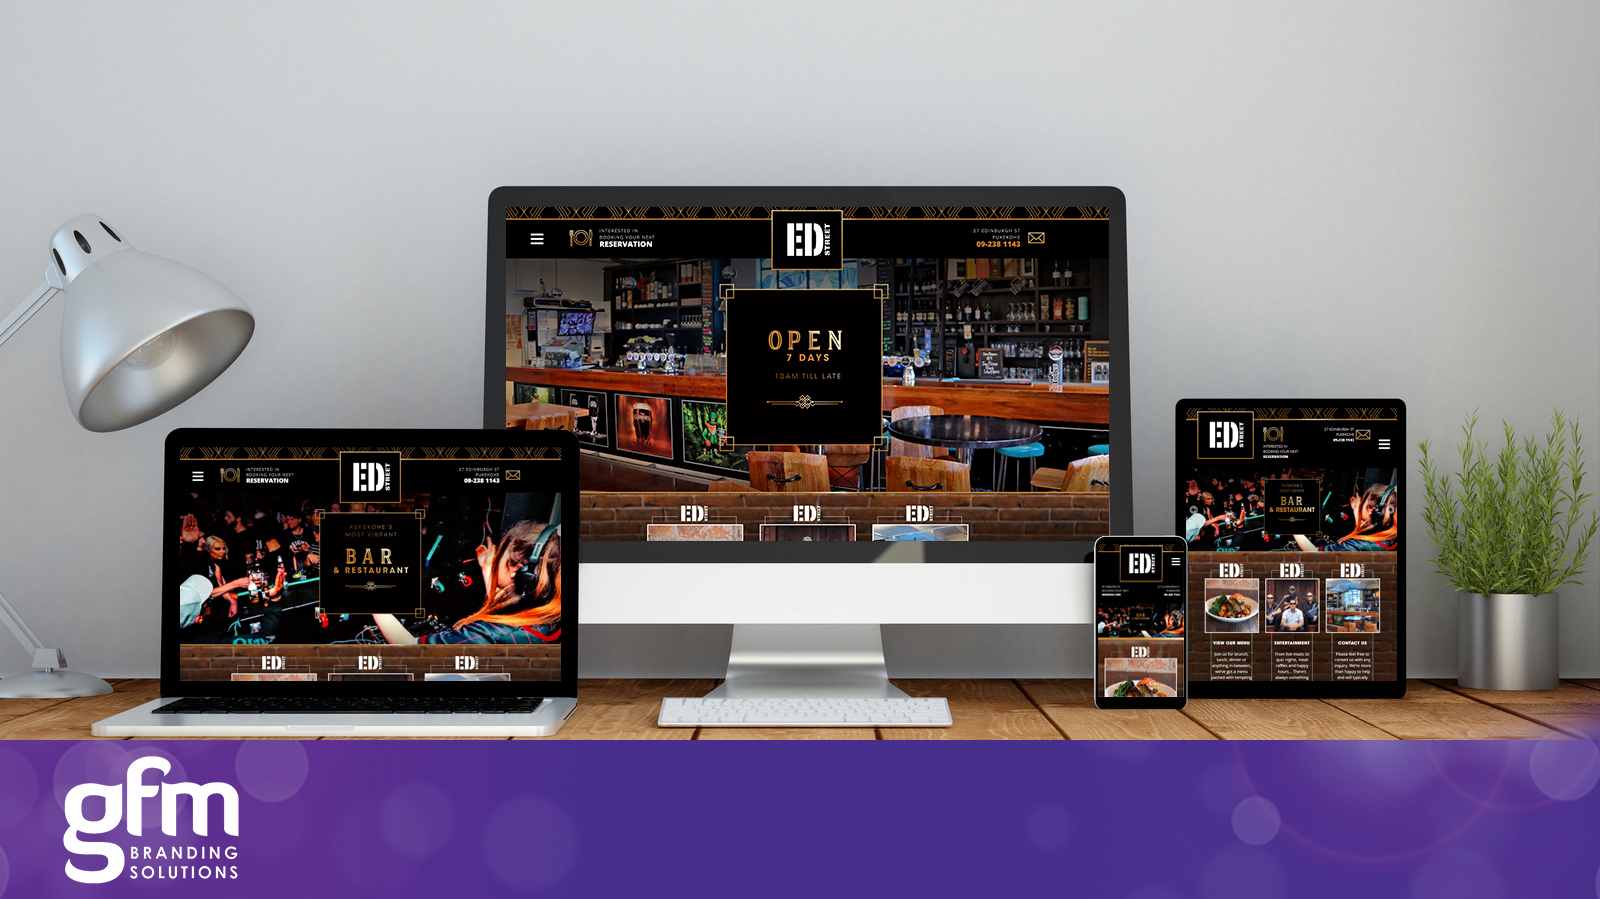 Ed Street Bar fully responsive website design on multiple screens